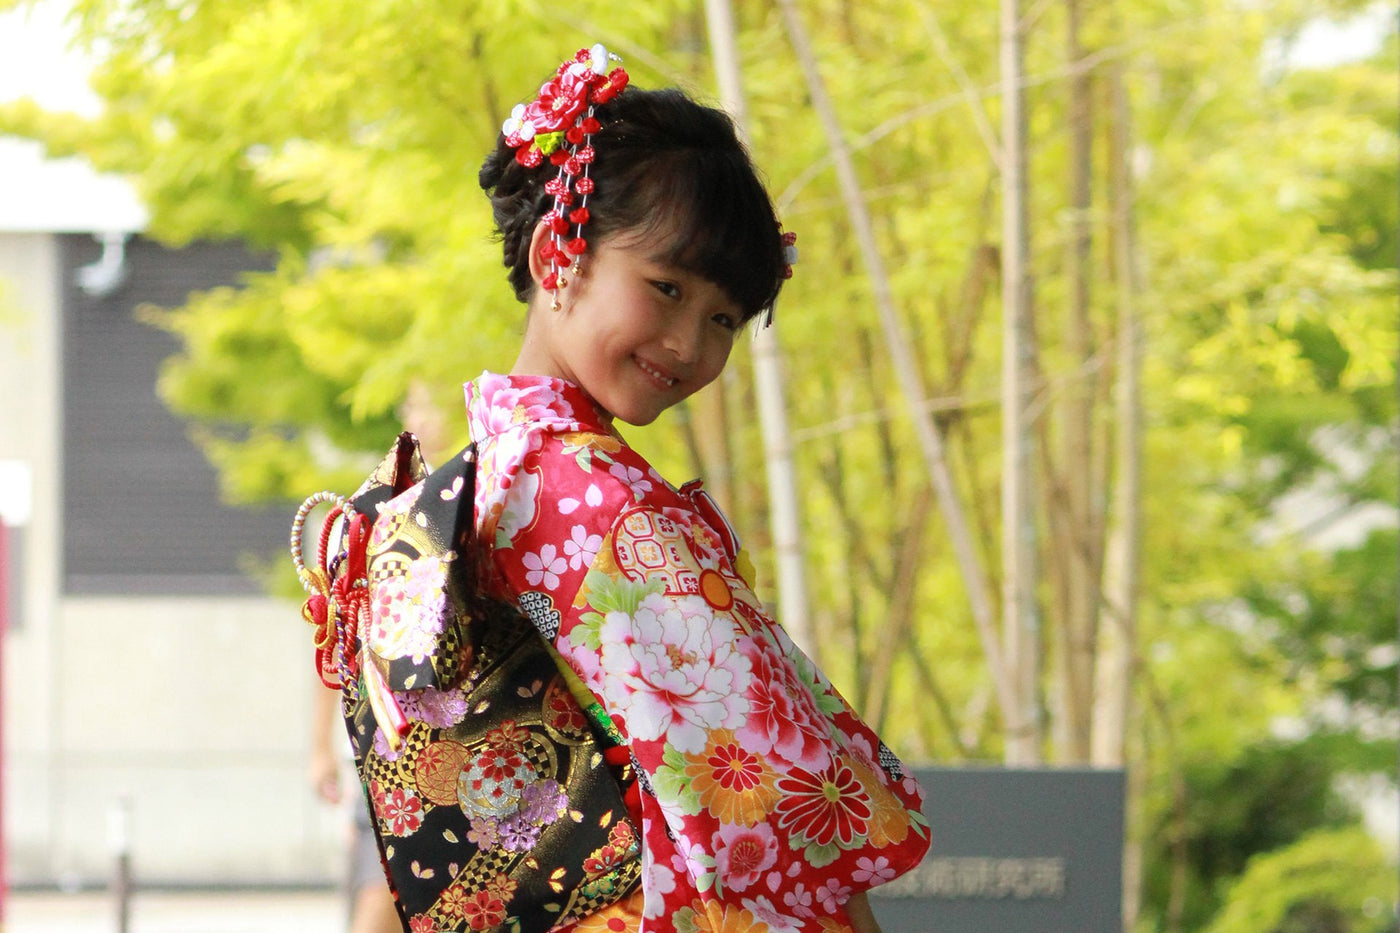 Girl's Accessories for Kimono